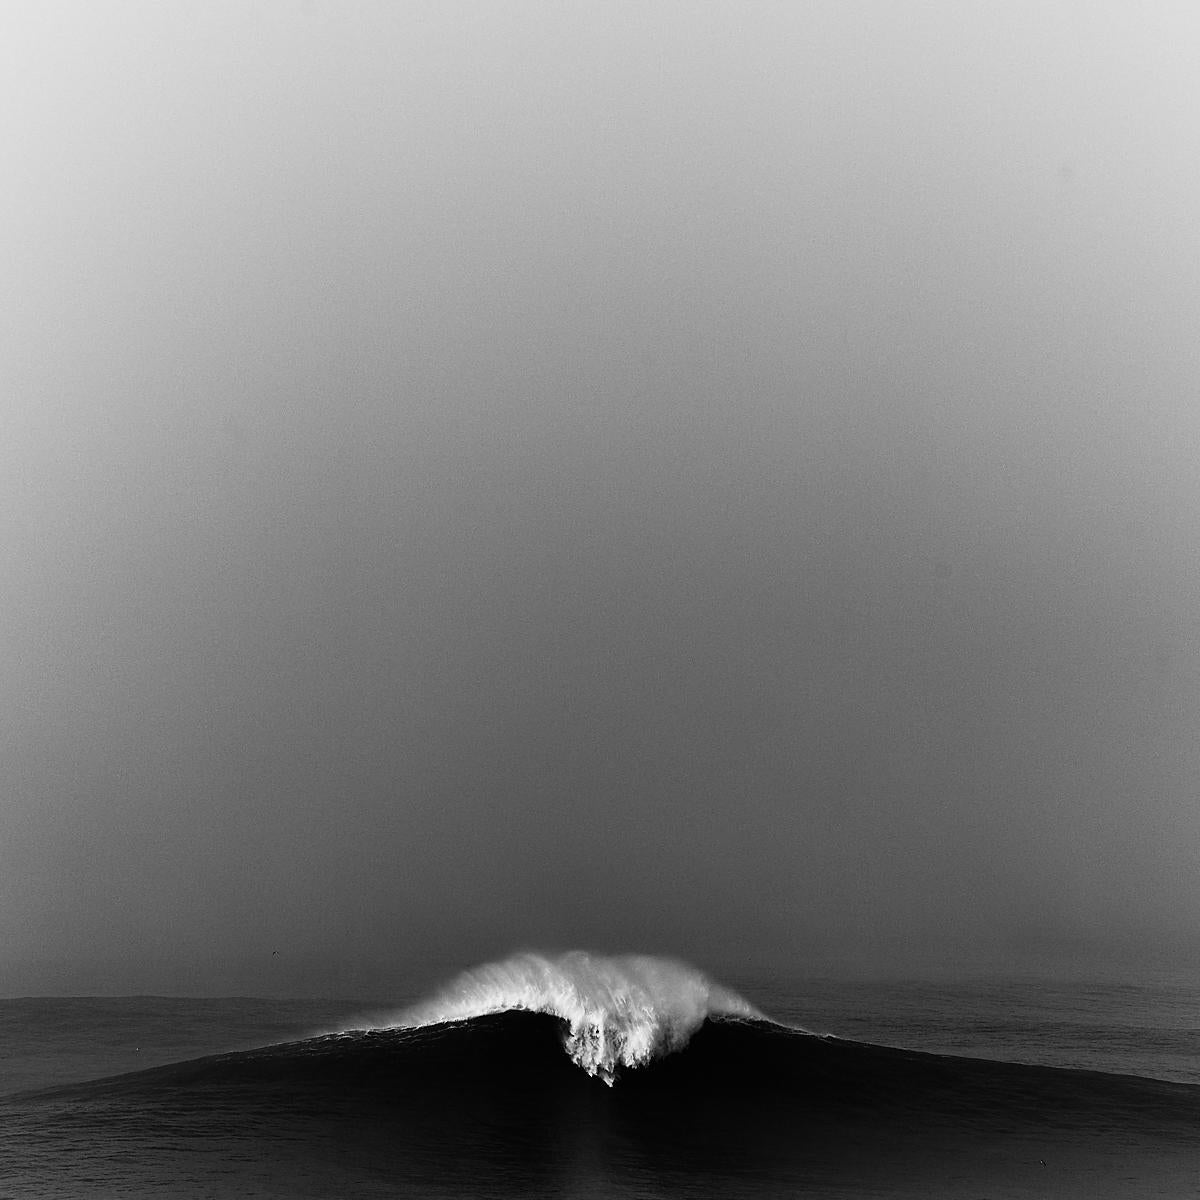 Mare #341 - Seascape - Crashing Waves